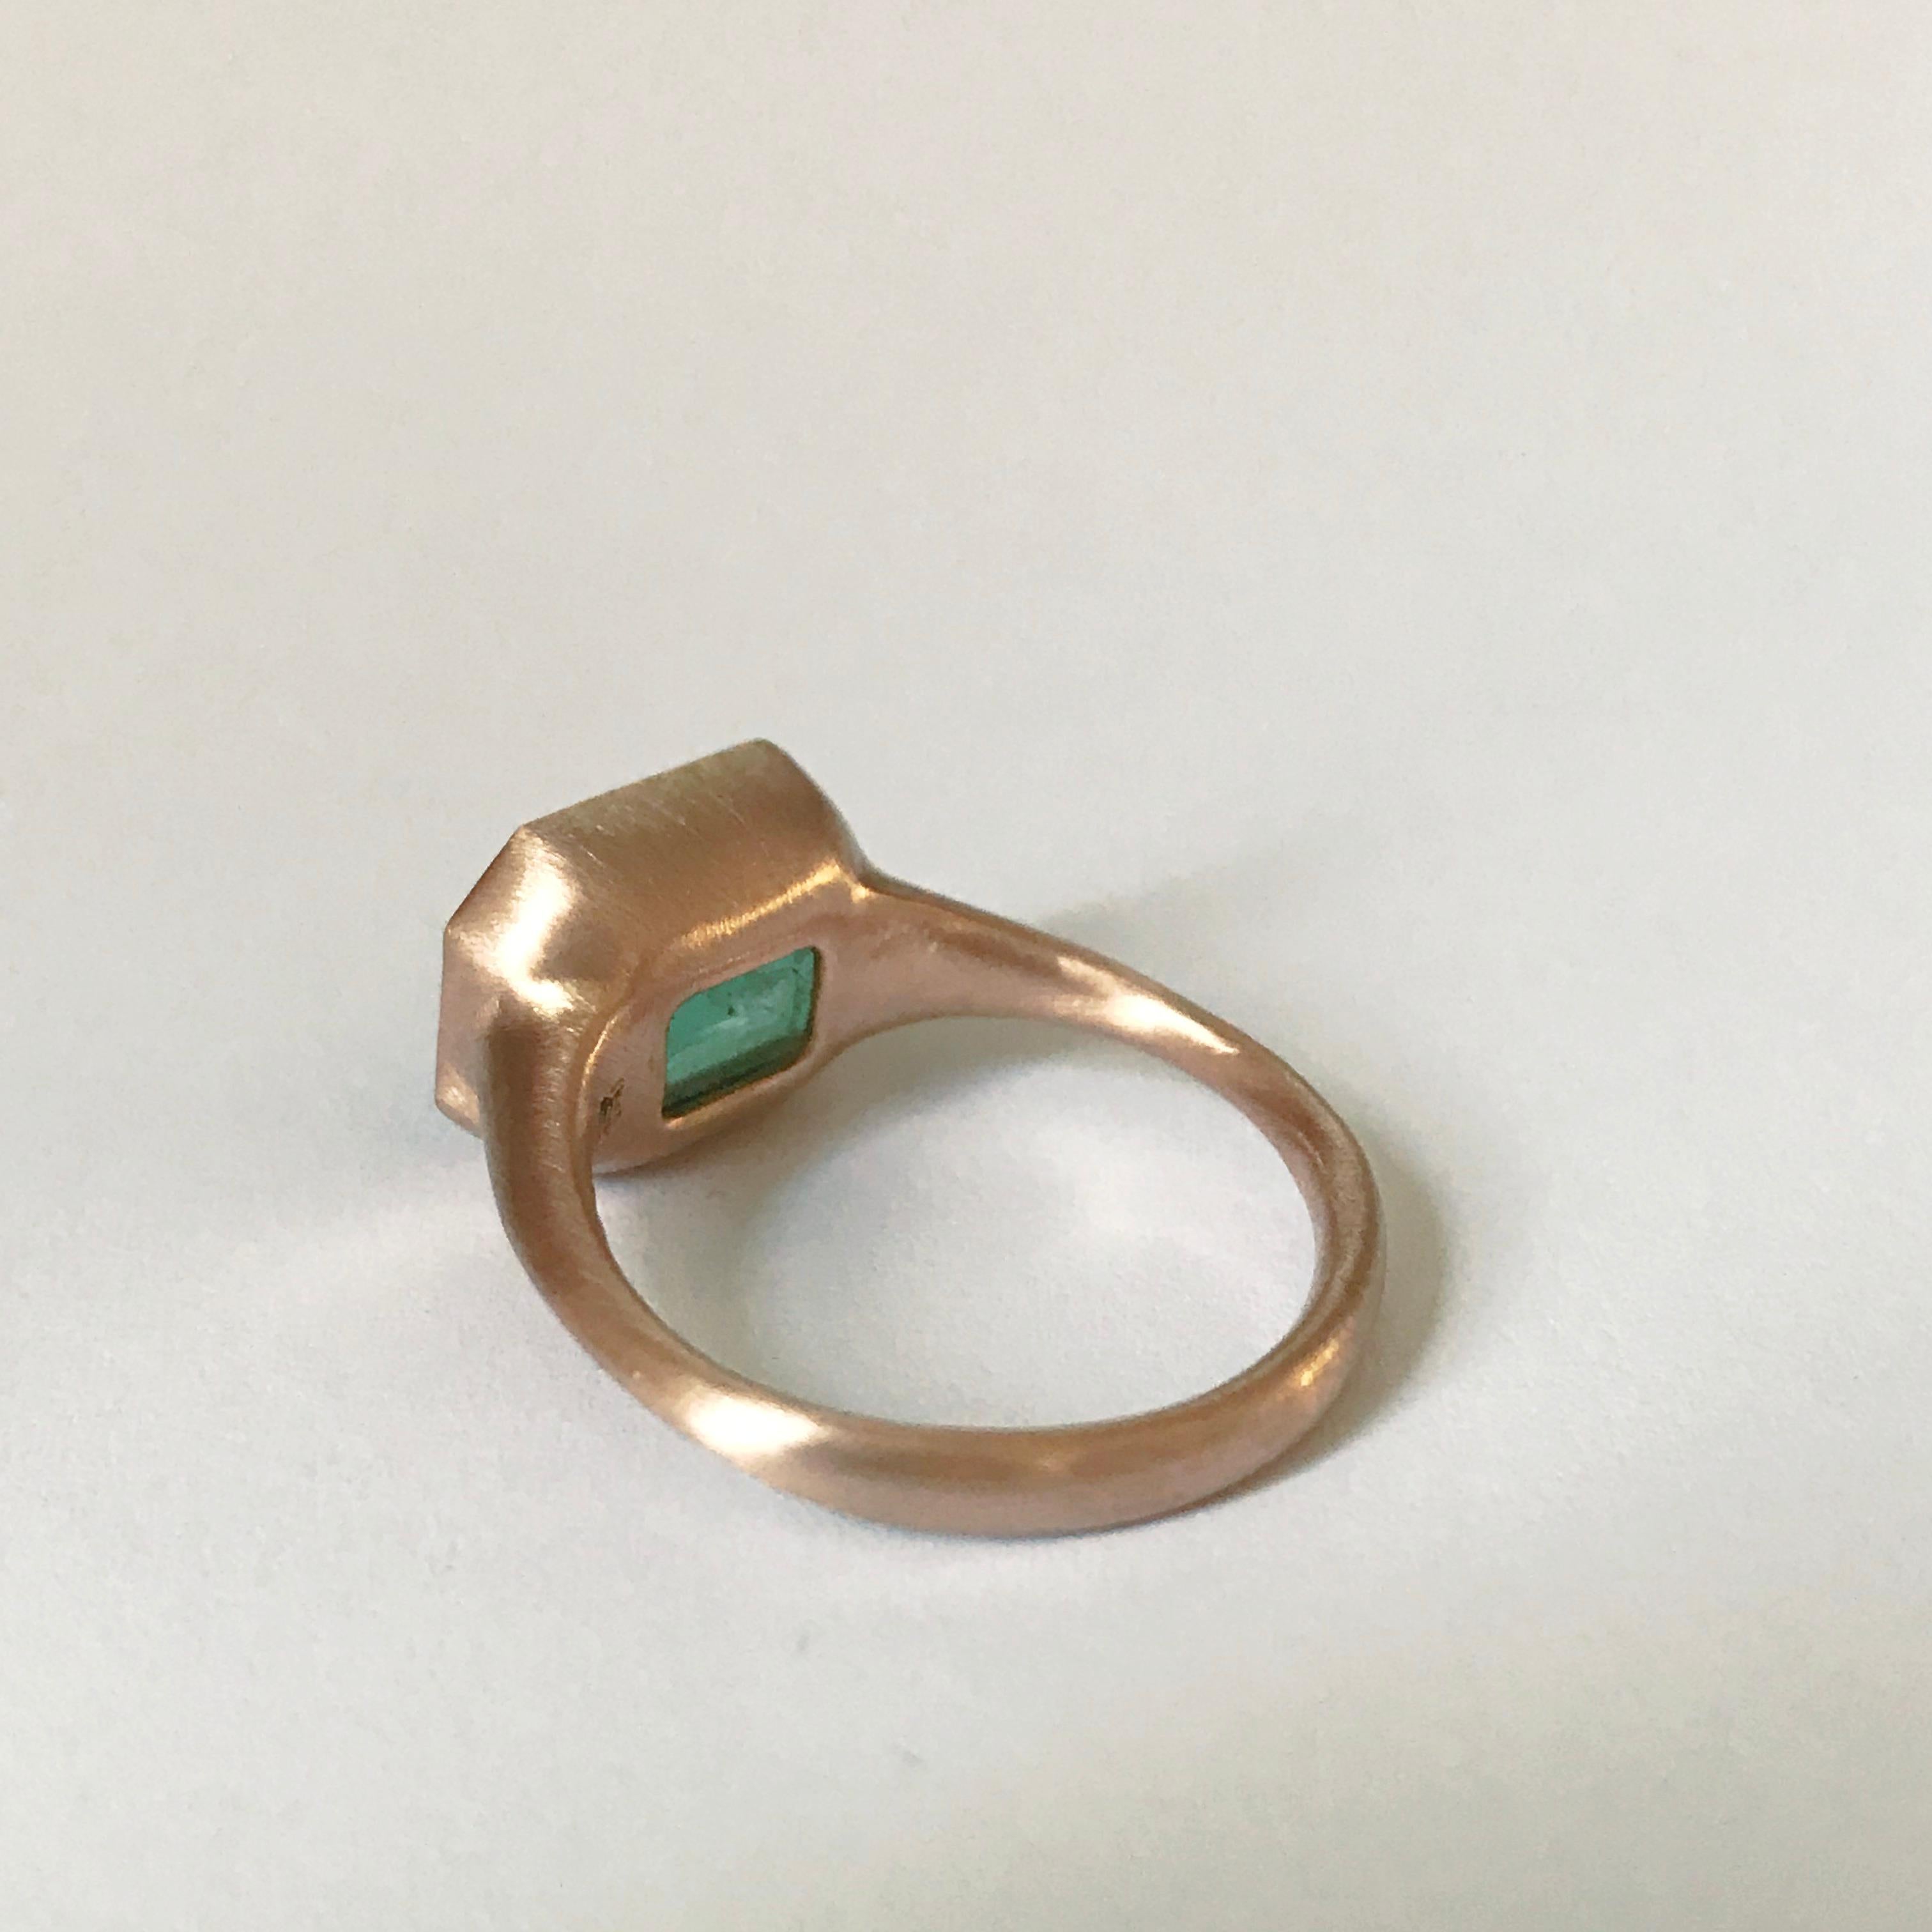 Dalben 4, 10 Carat Emerald Rose Gold Ring 5